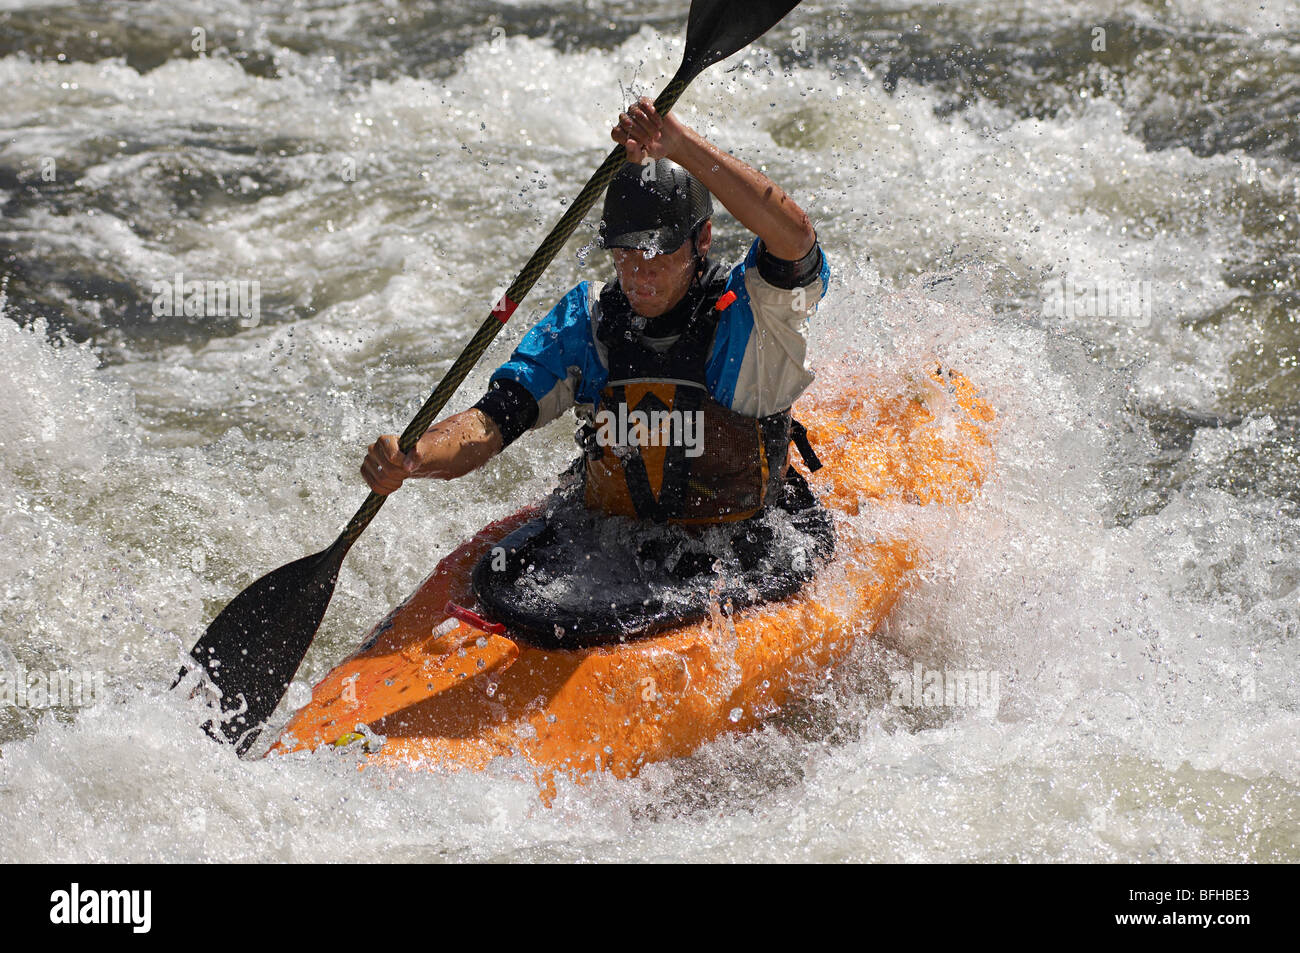 Man kayaking on mountain river Stock Photo